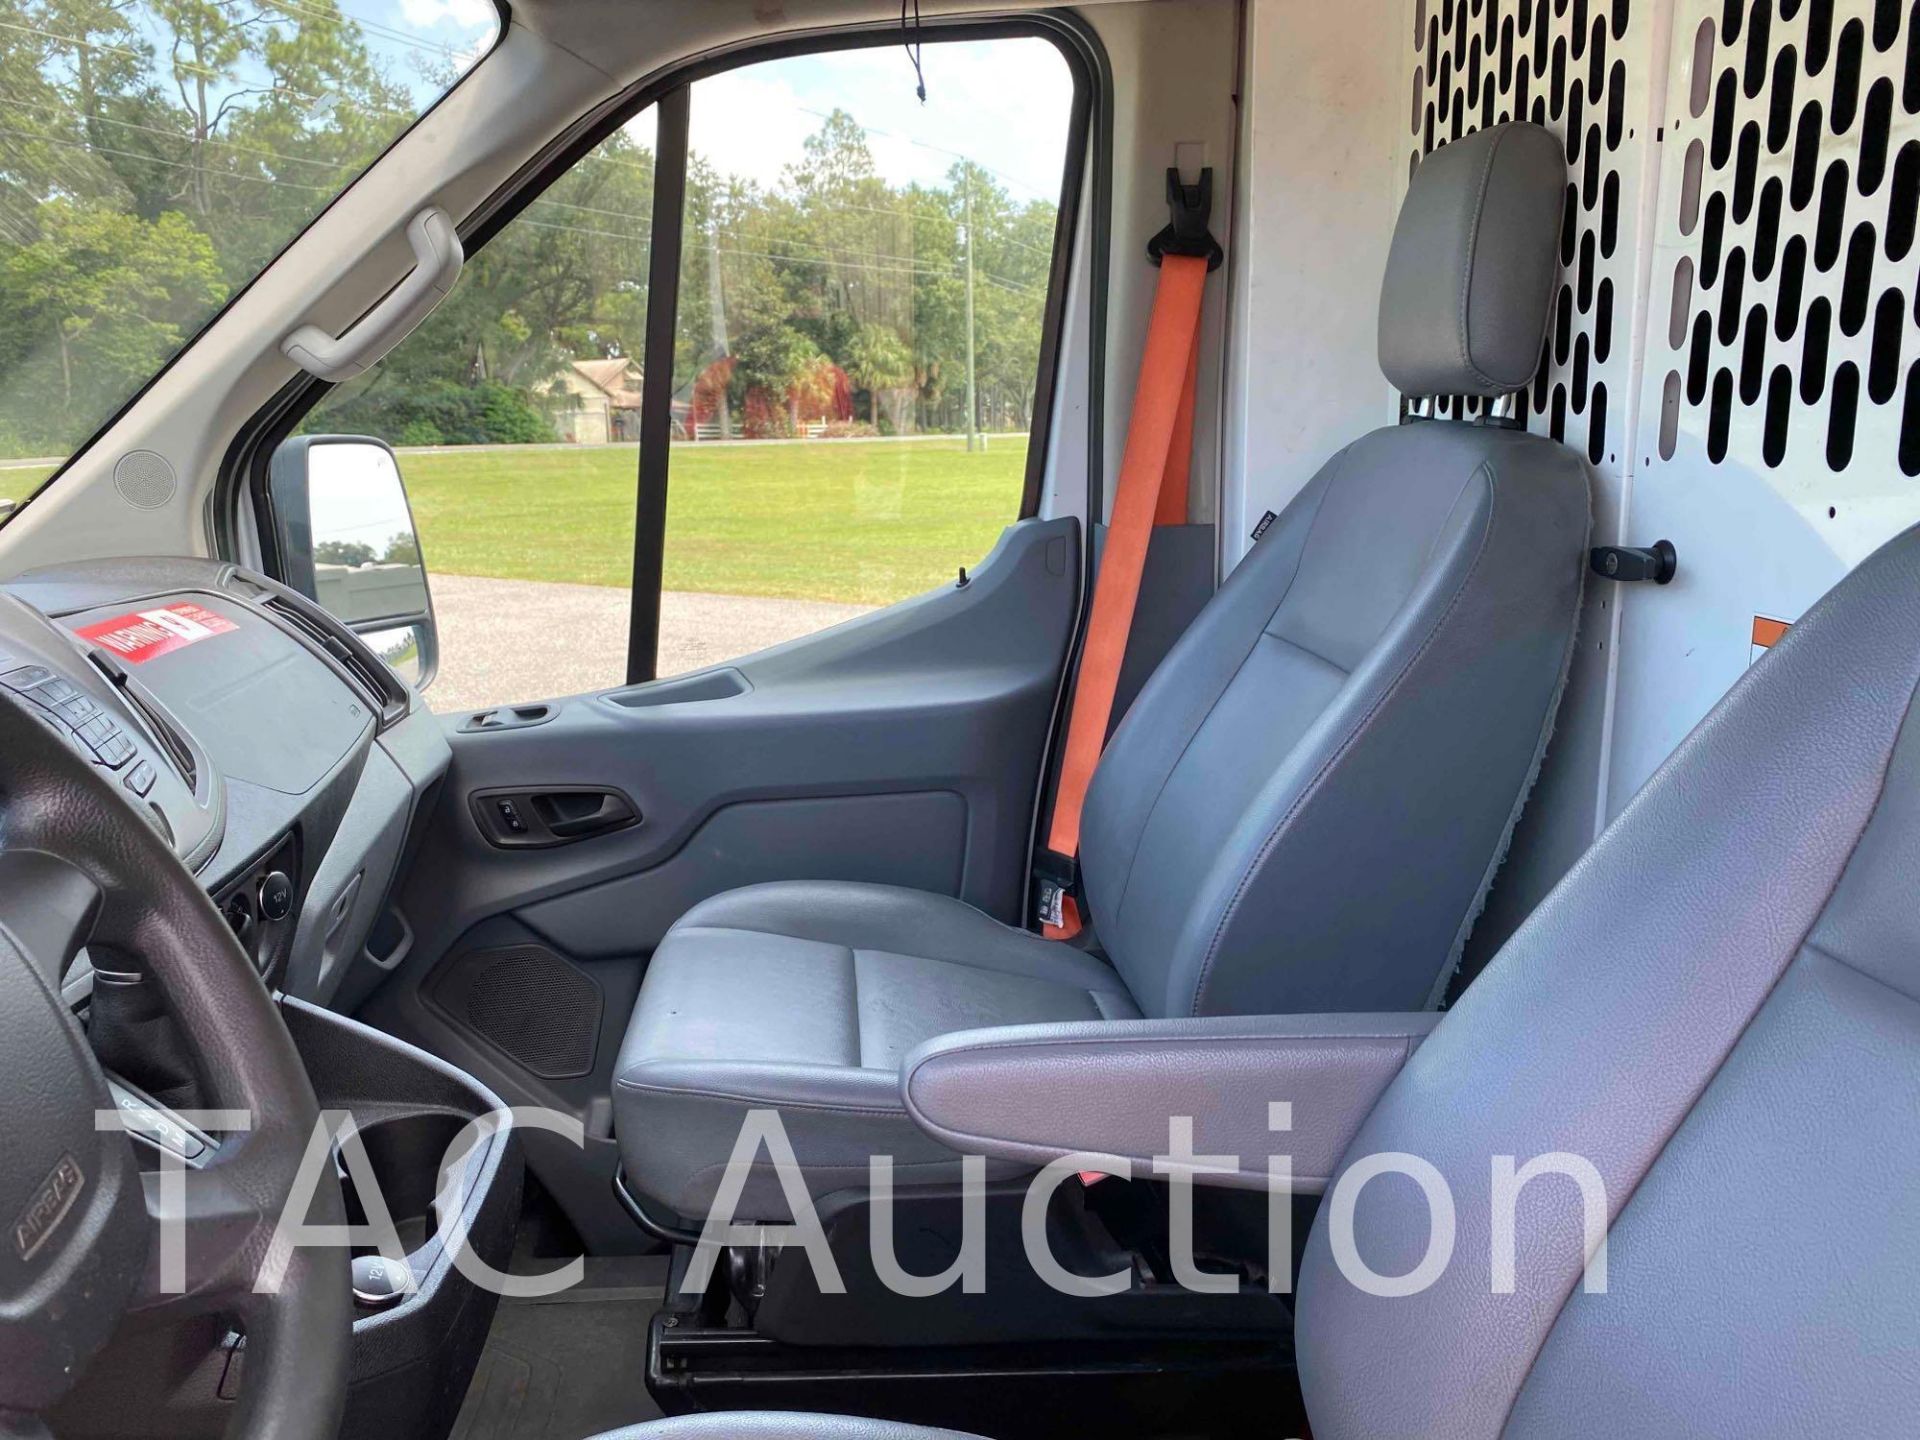 2019 Ford Transit 150 Cargo Van - Image 11 of 50